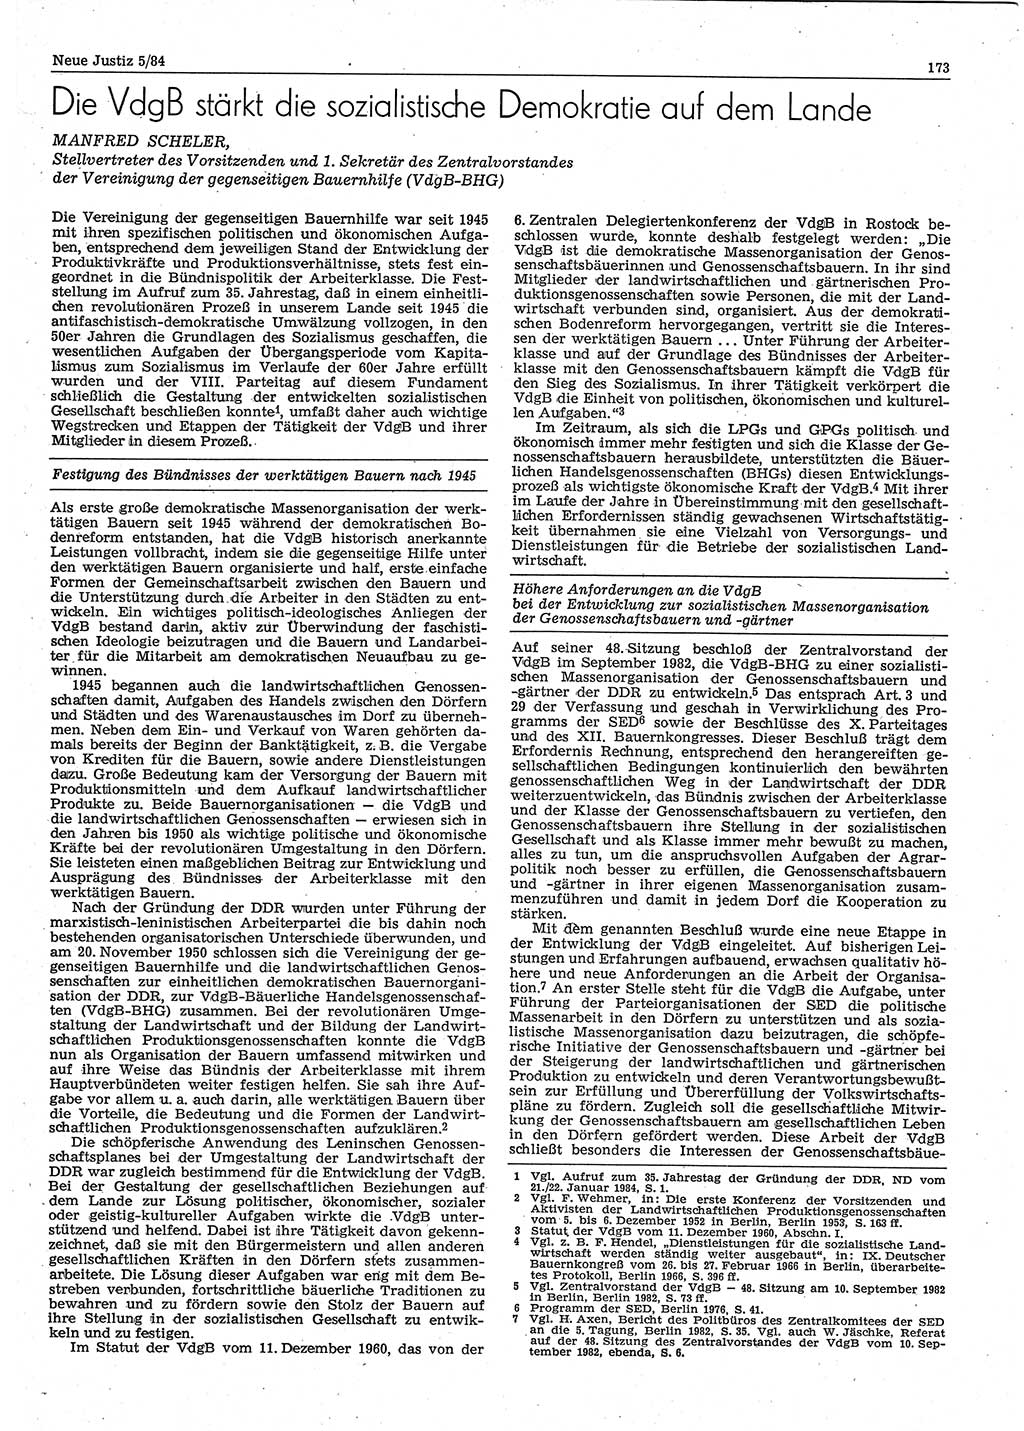 Neue Justiz (NJ), Zeitschrift für sozialistisches Recht und Gesetzlichkeit [Deutsche Demokratische Republik (DDR)], 38. Jahrgang 1984, Seite 173 (NJ DDR 1984, S. 173)